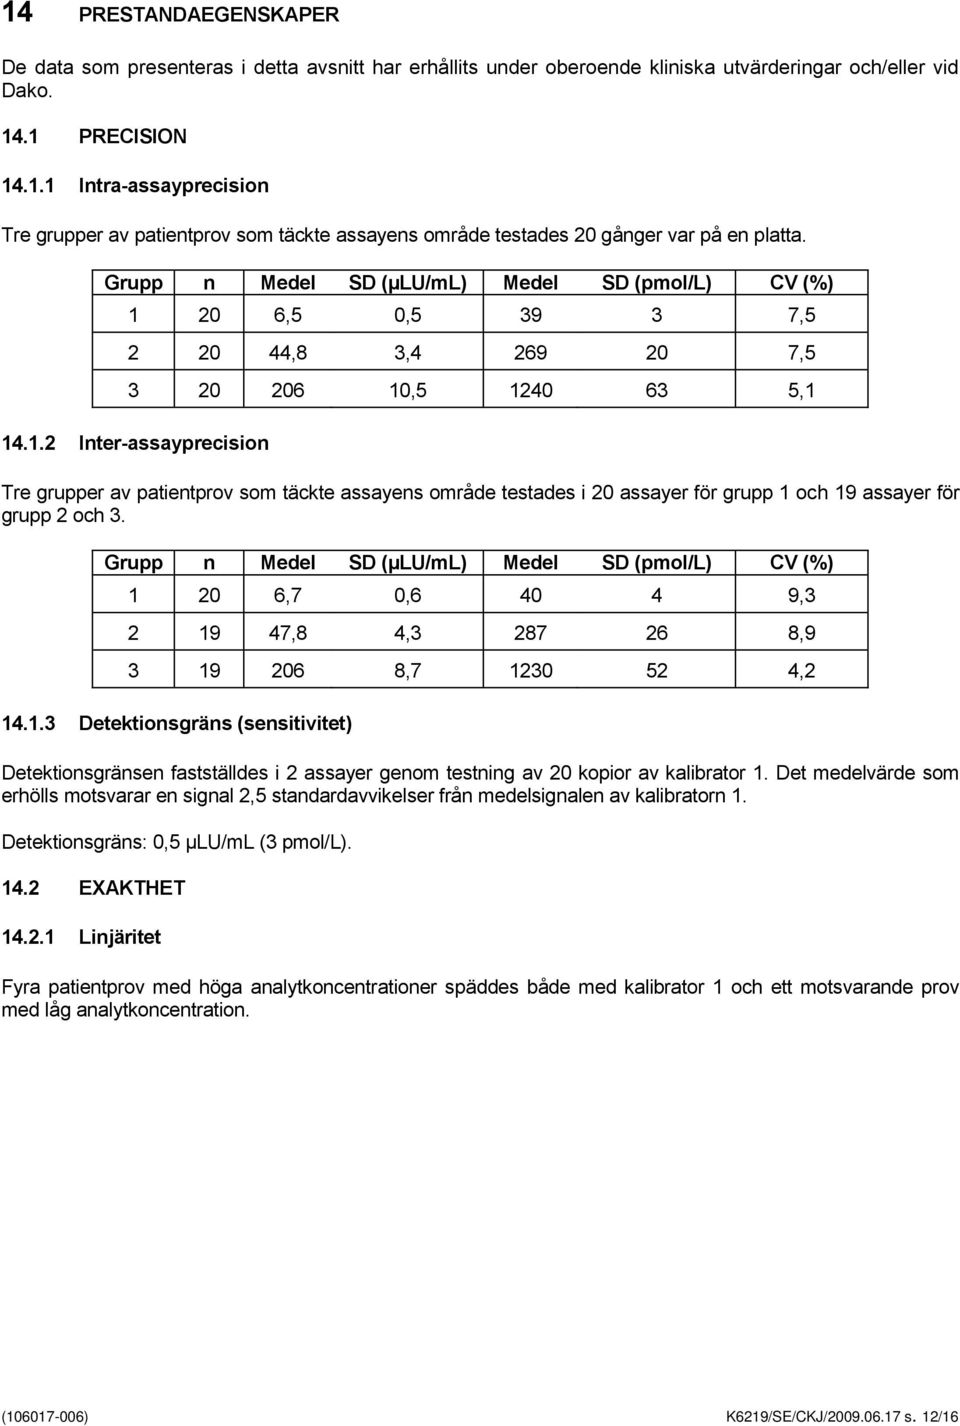 Grupp n Medel SD (µlu/ml) Medel SD (pmol/l) CV (%) 1 20 6,7 0,6 40 4 9,3 2 19 47,8 4,3 287 26 8,9 3 19 206 8,7 1230 52 4,2 14.1.3 Detektionsgräns (sensitivitet) Detektionsgränsen fastställdes i 2 assayer genom testning av 20 kopior av kalibrator 1.